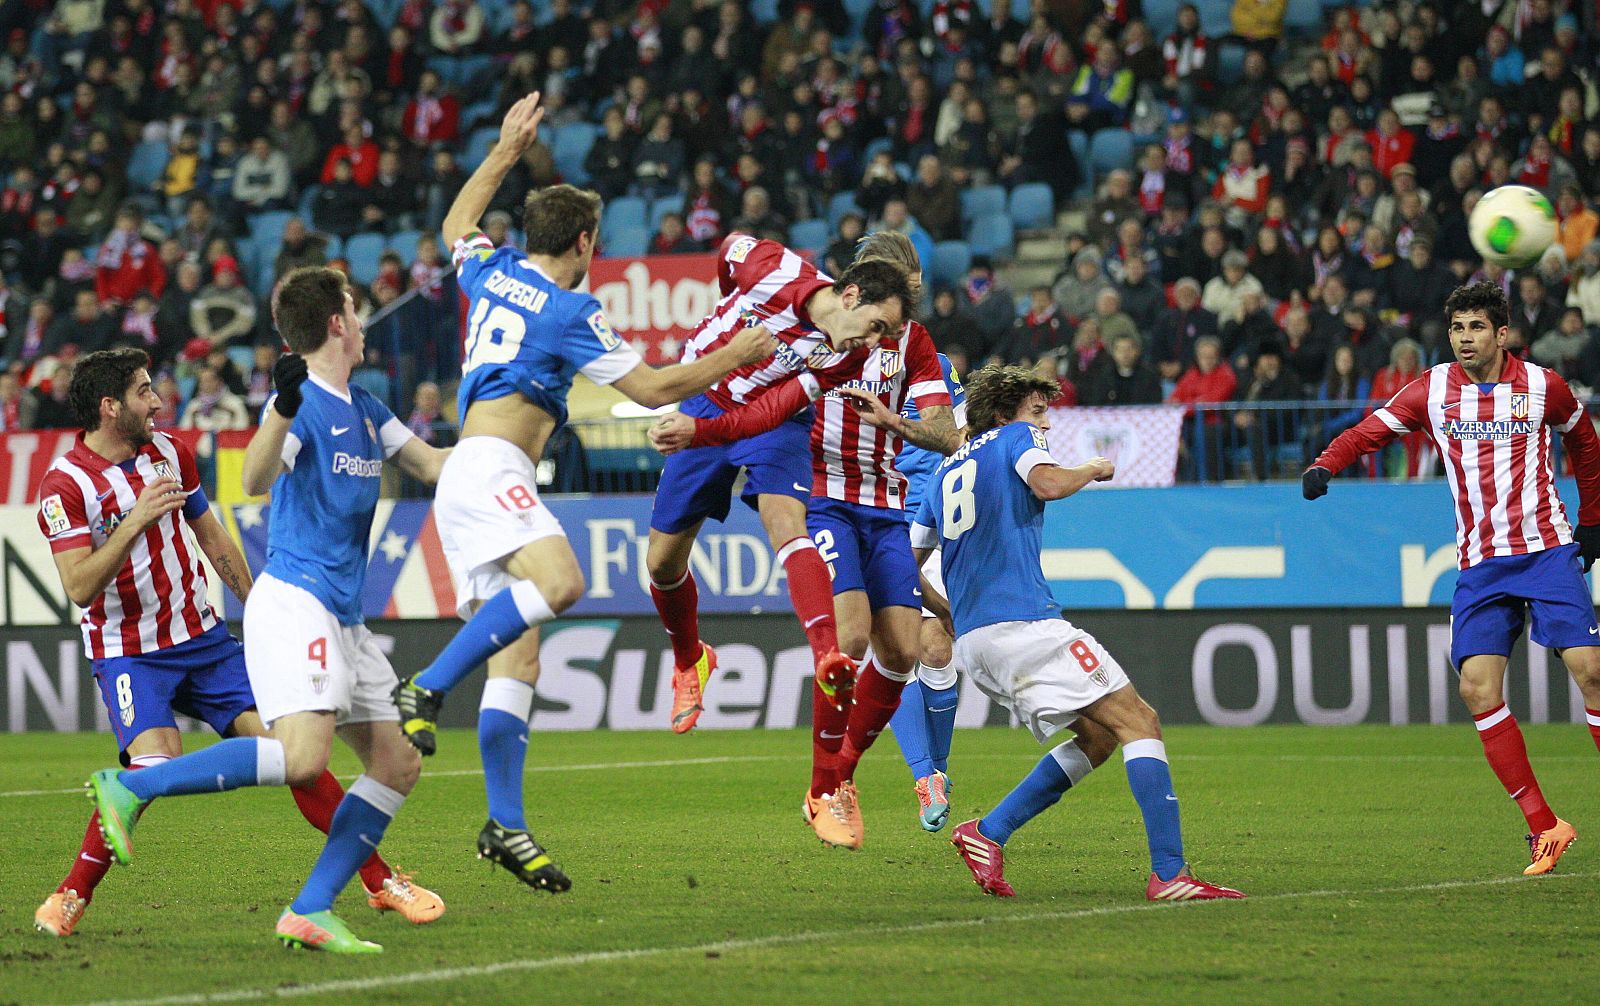 El defensa uruguayo del Atlético de Madrid Diego Roberto Godín marca el primer gol del equipo ante el Athletic.